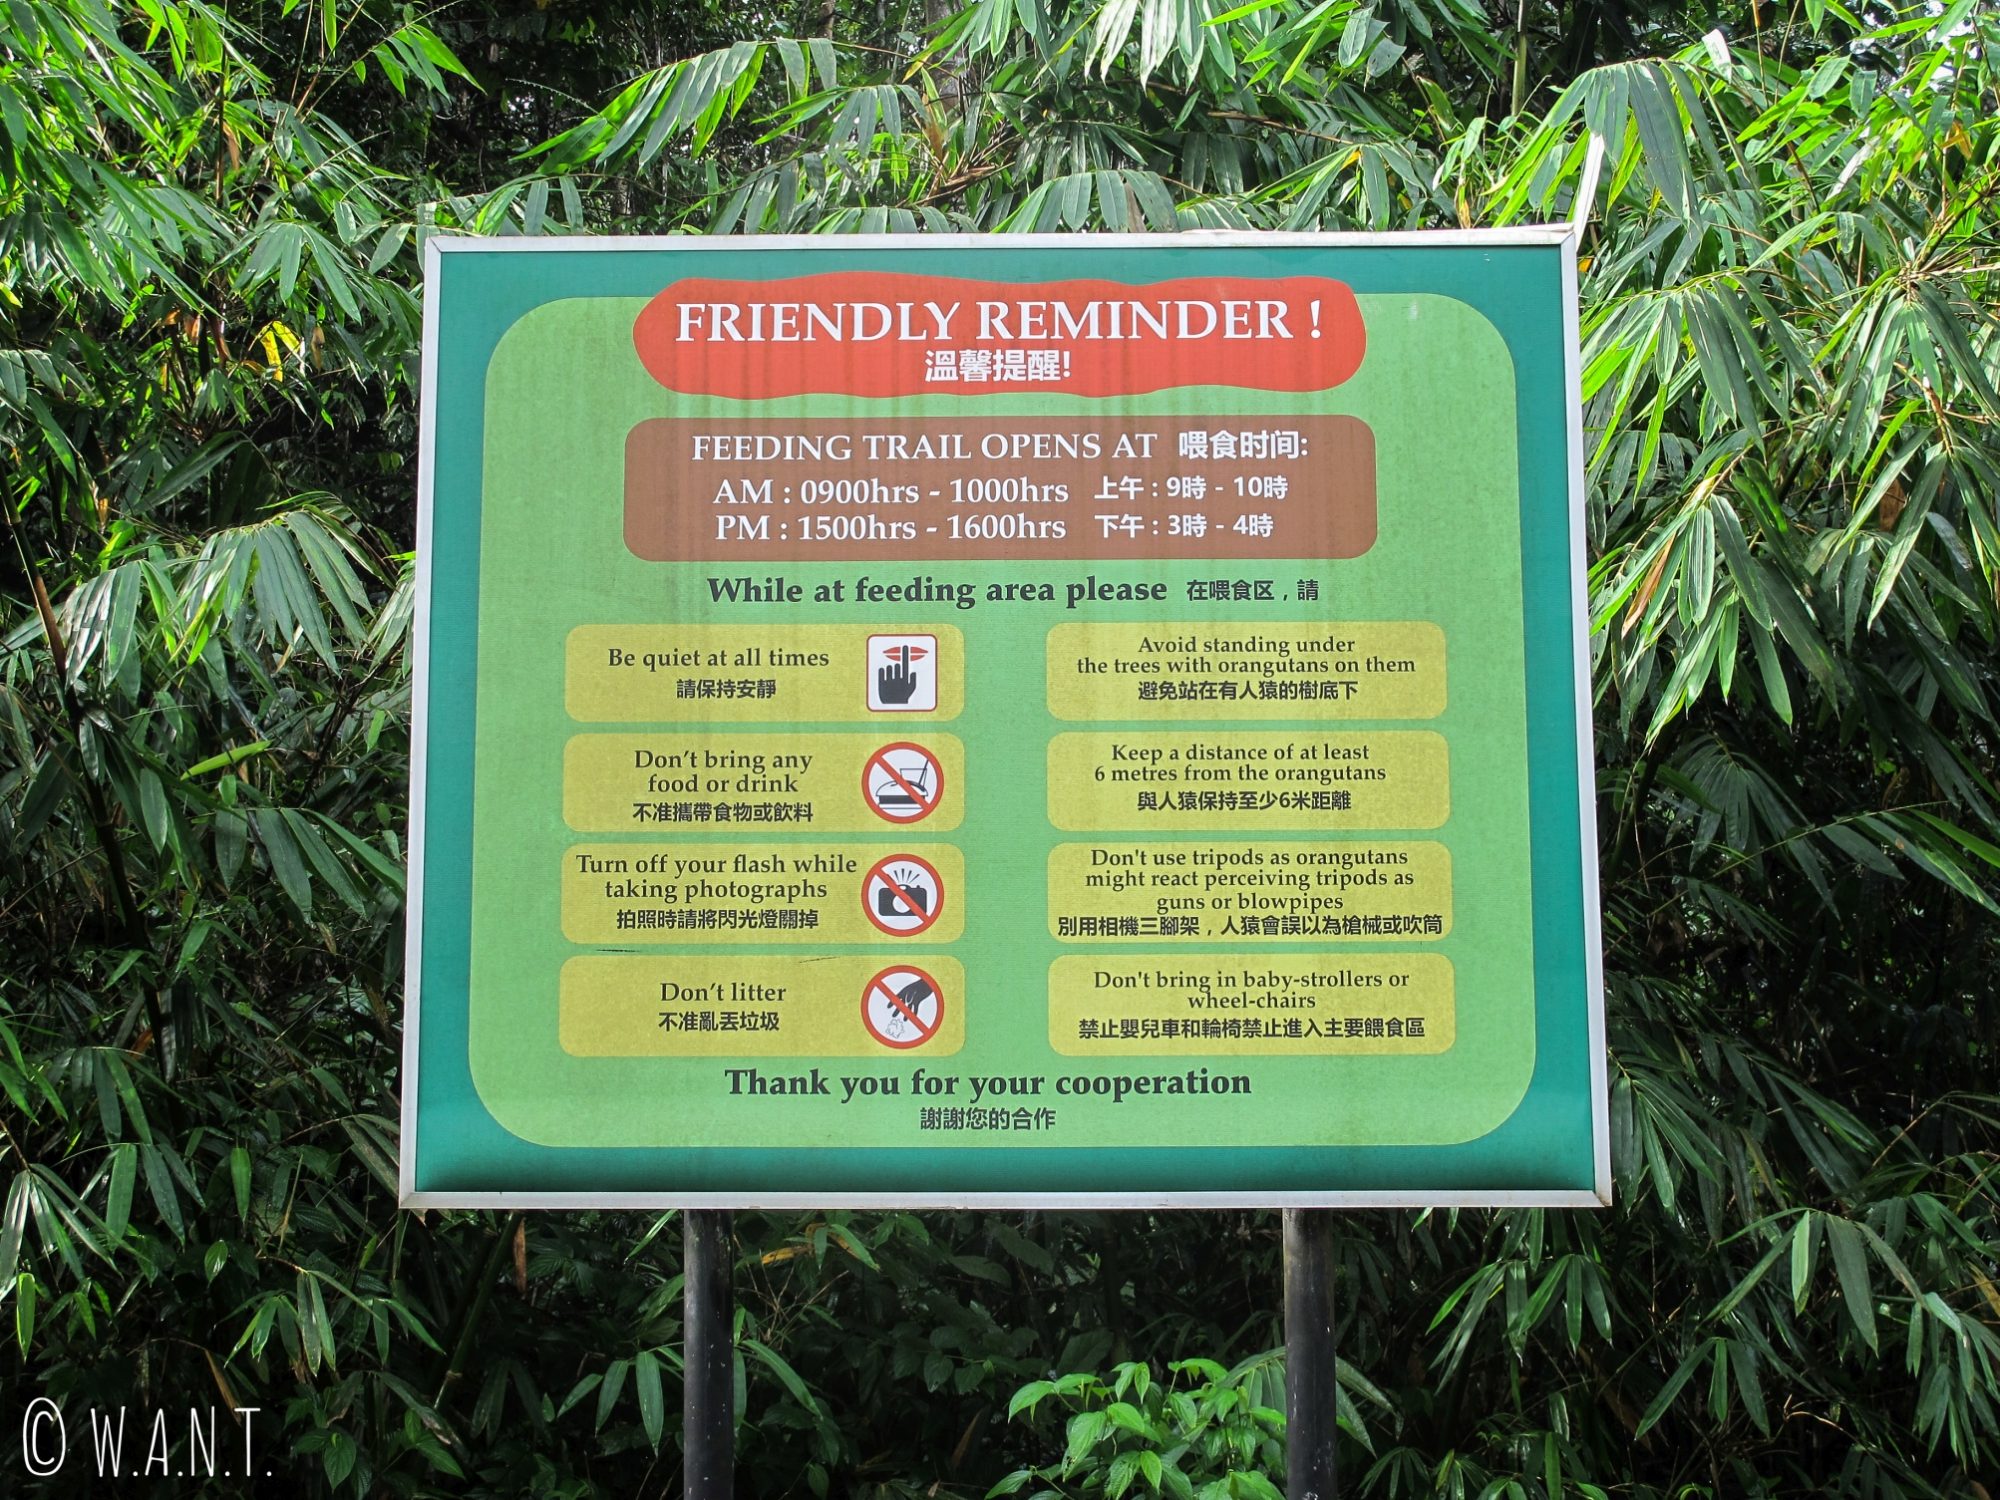 Horaires d'accès pour observer les orangs-outans au Semenggoh Nature Reserve